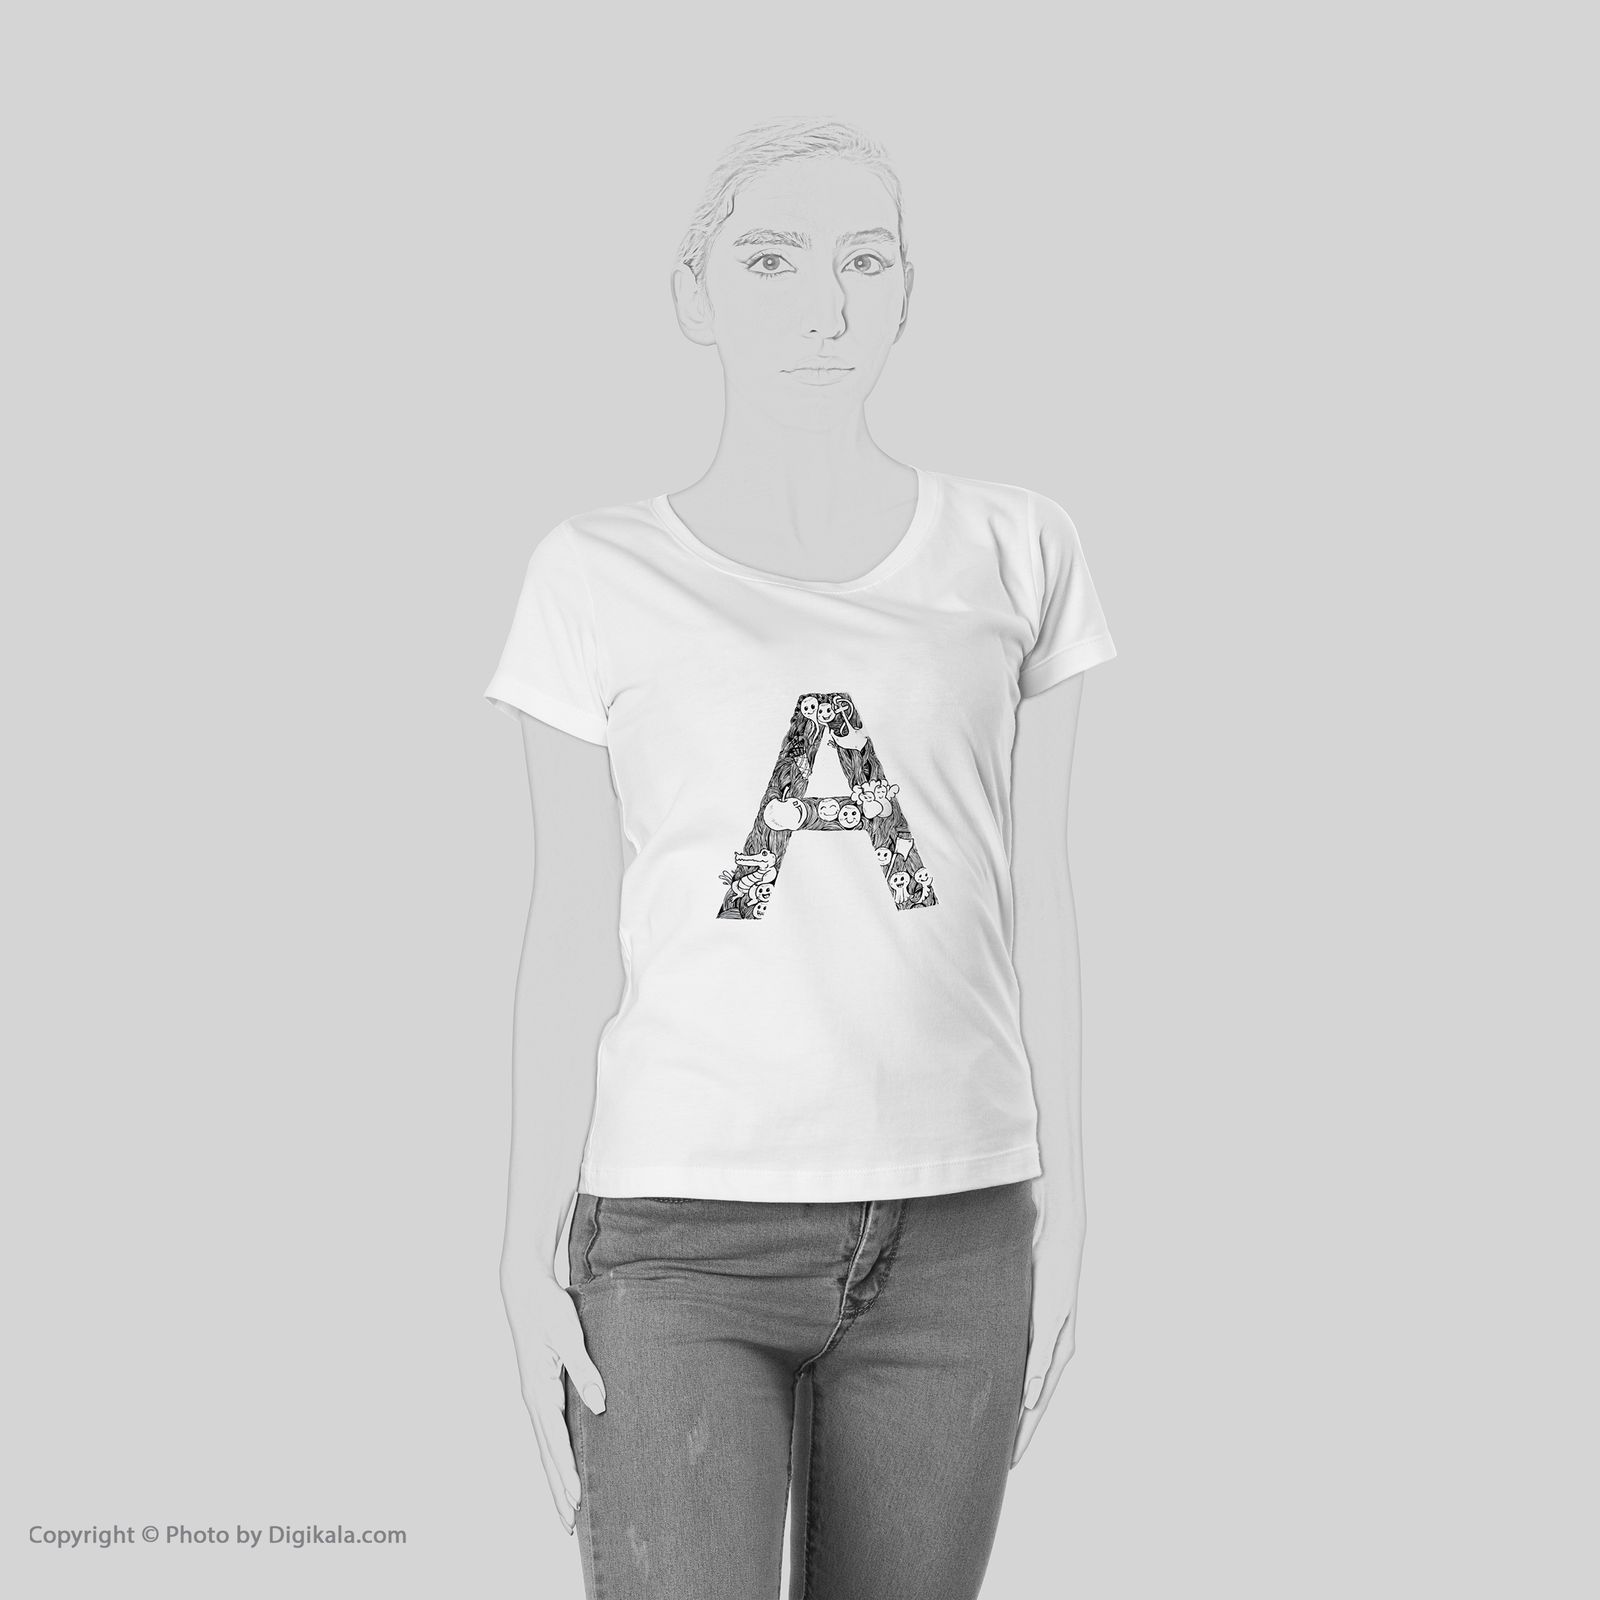 تی شرت آستین کوتاه زنانه شین دیزاین طرح حروف اول اسم A کد 4496 -  - 2